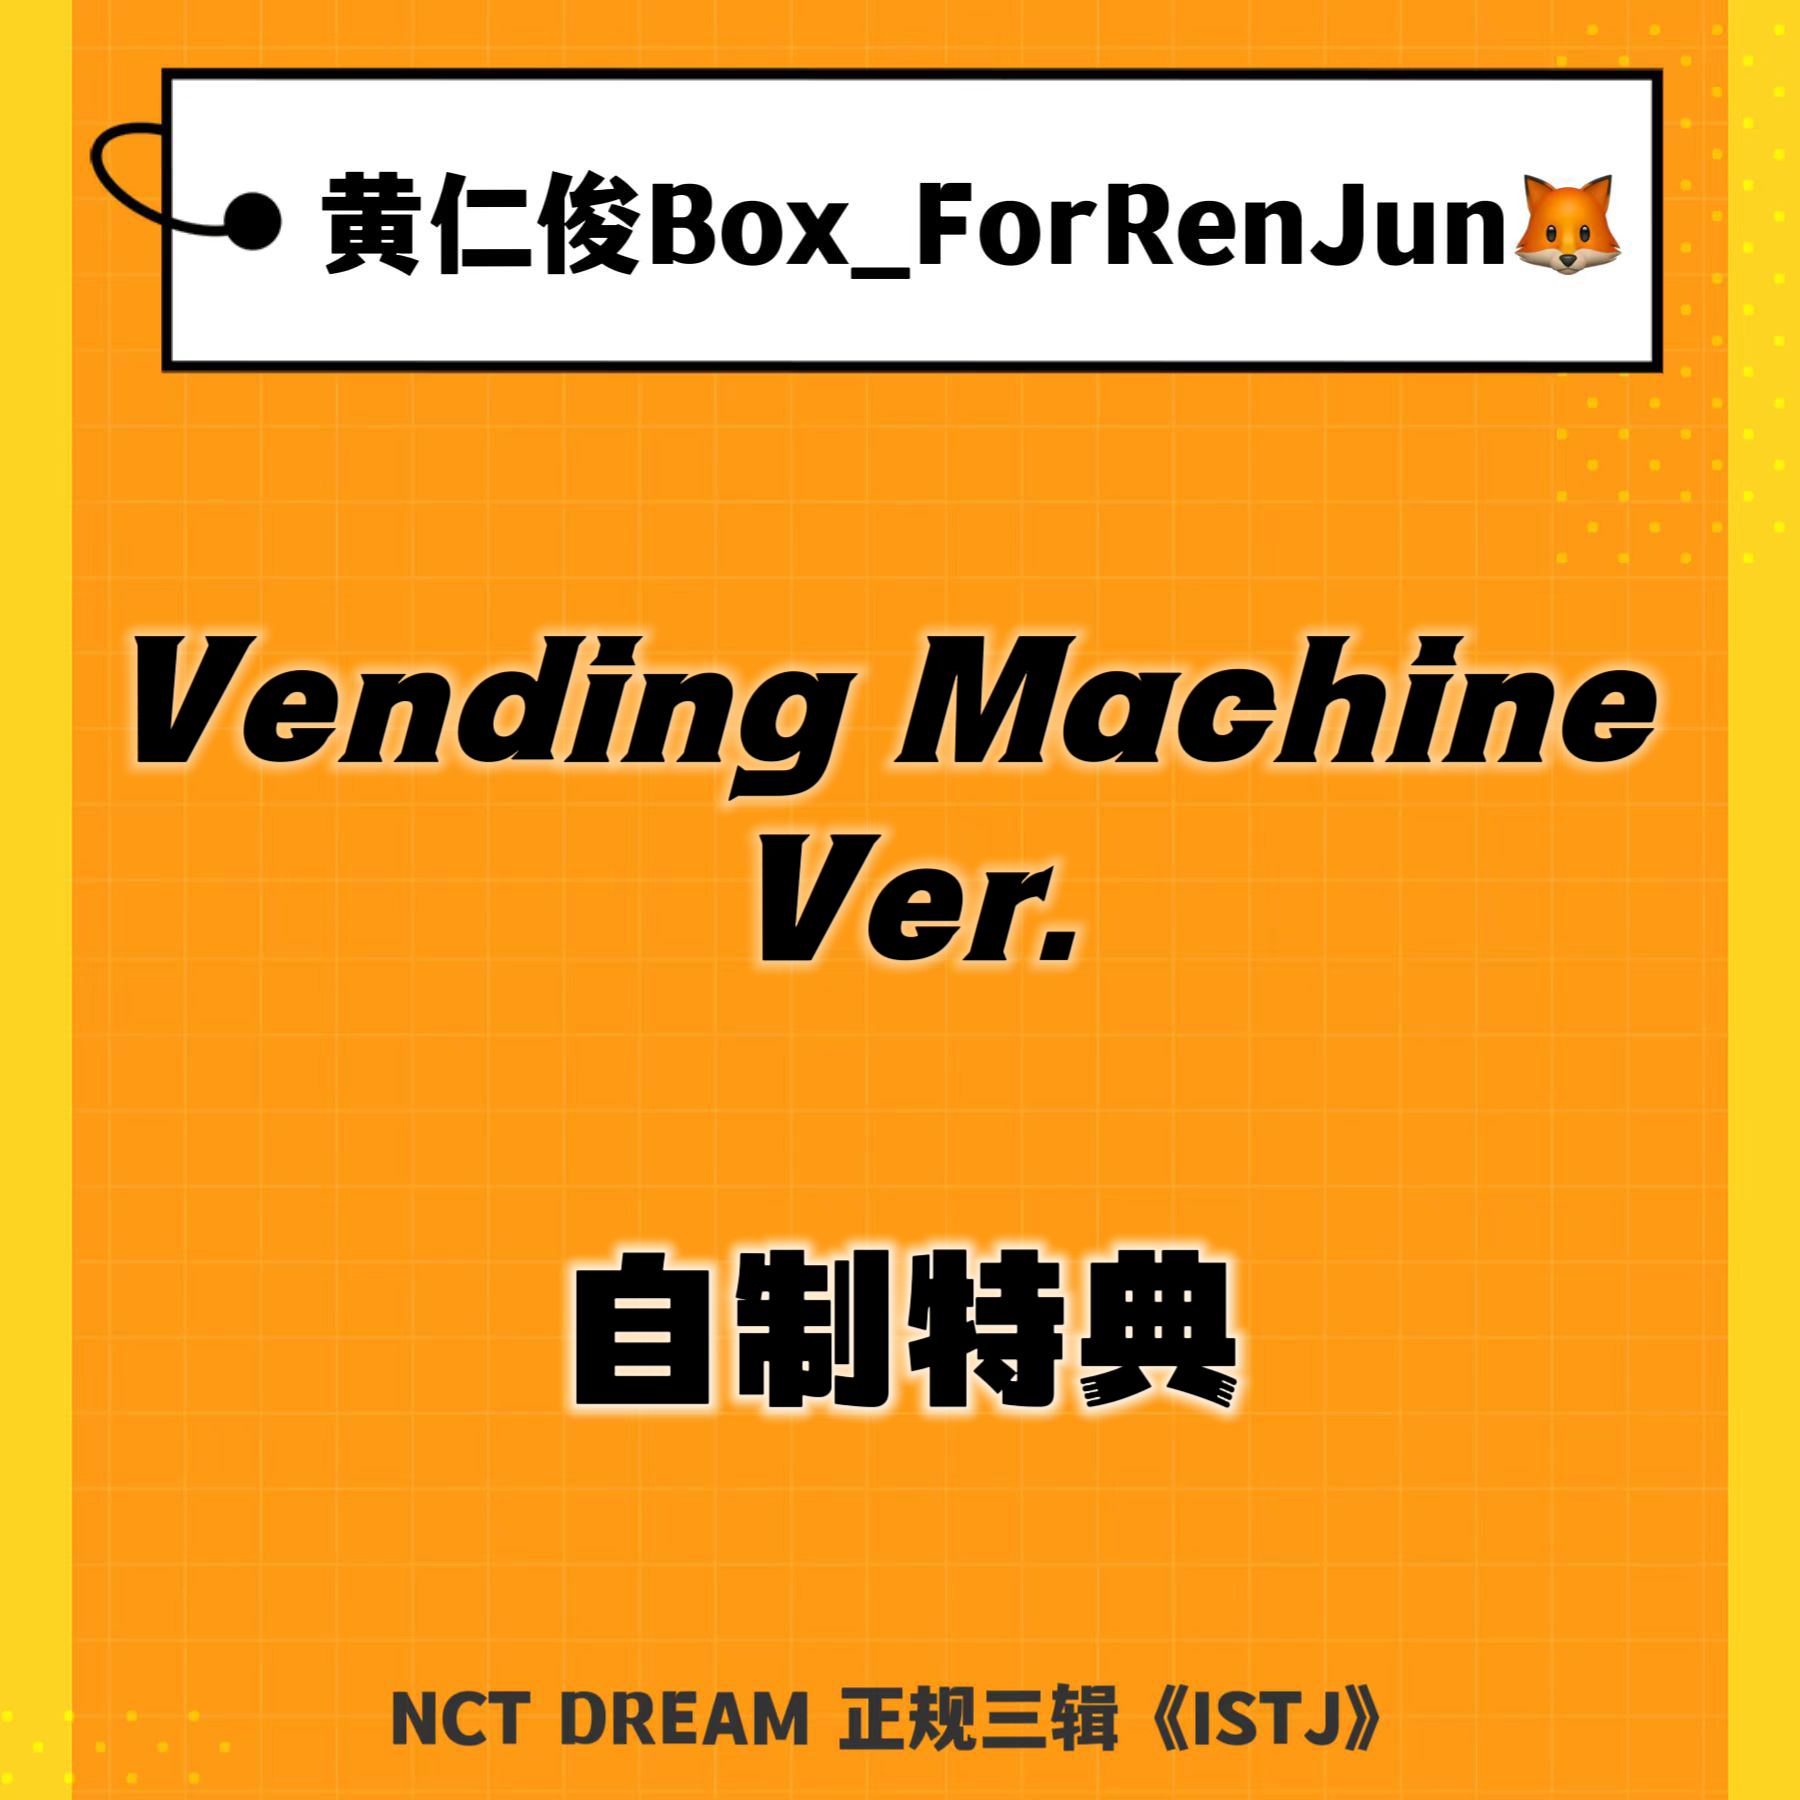 [补款 裸专] (*需备注微店手机号) NCT DREAM - 正规3辑 [ISTJ] (Vending Machine Ver.)_黄仁俊吧RenJunBar